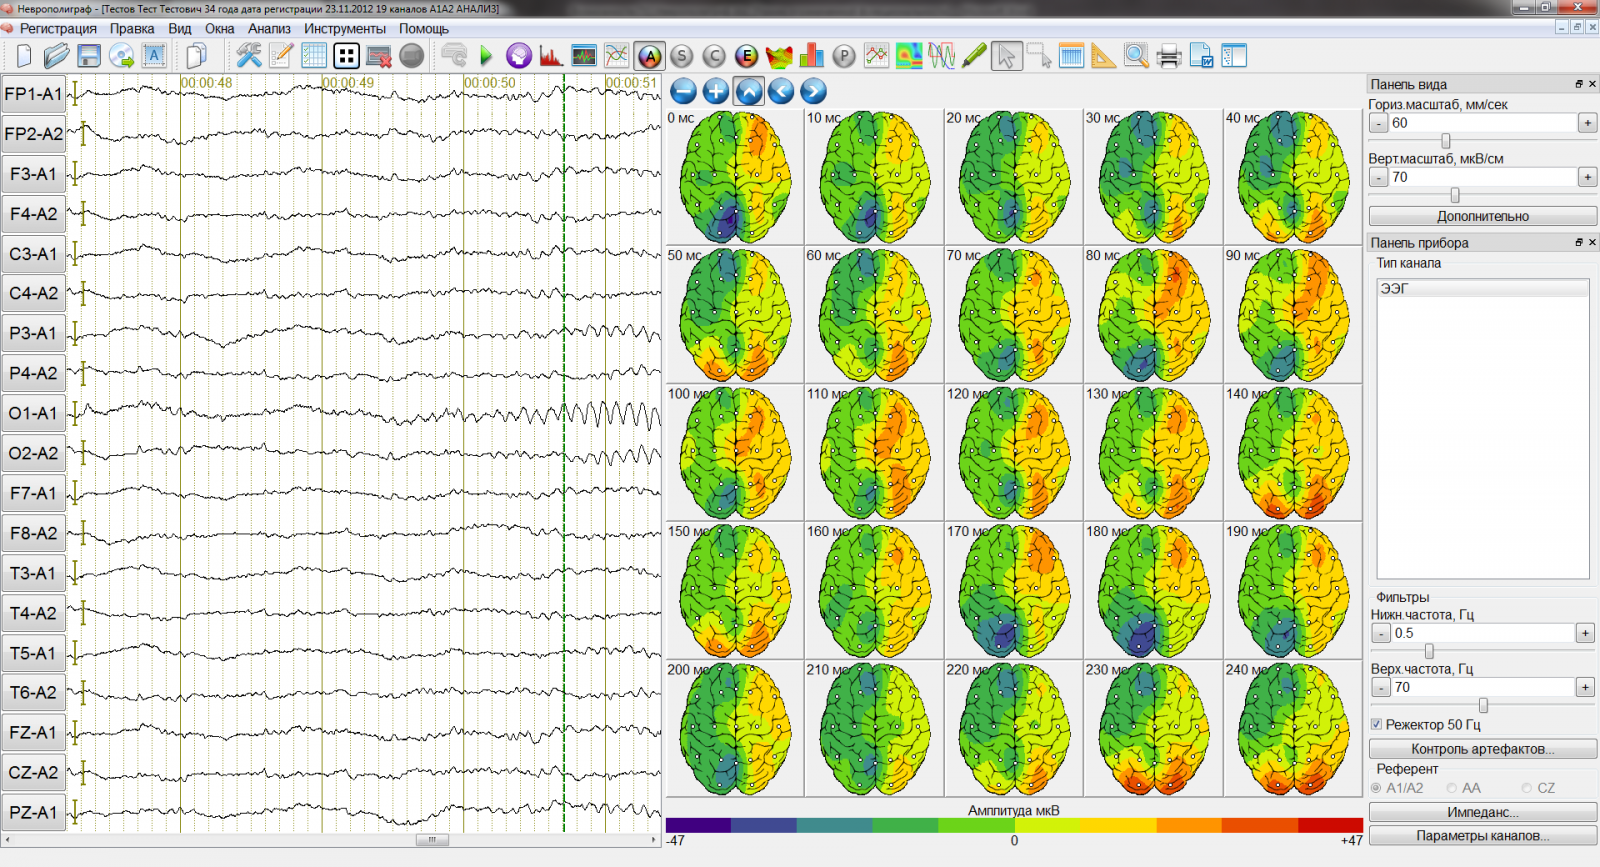 ЭЭГ картирование головного мозга. Топографическое картирование электрической активности мозга. Метод картирования ЭЭГ. Картирование электрической активности мозга с помощью ЭЭГ. Регистрация активности мозга